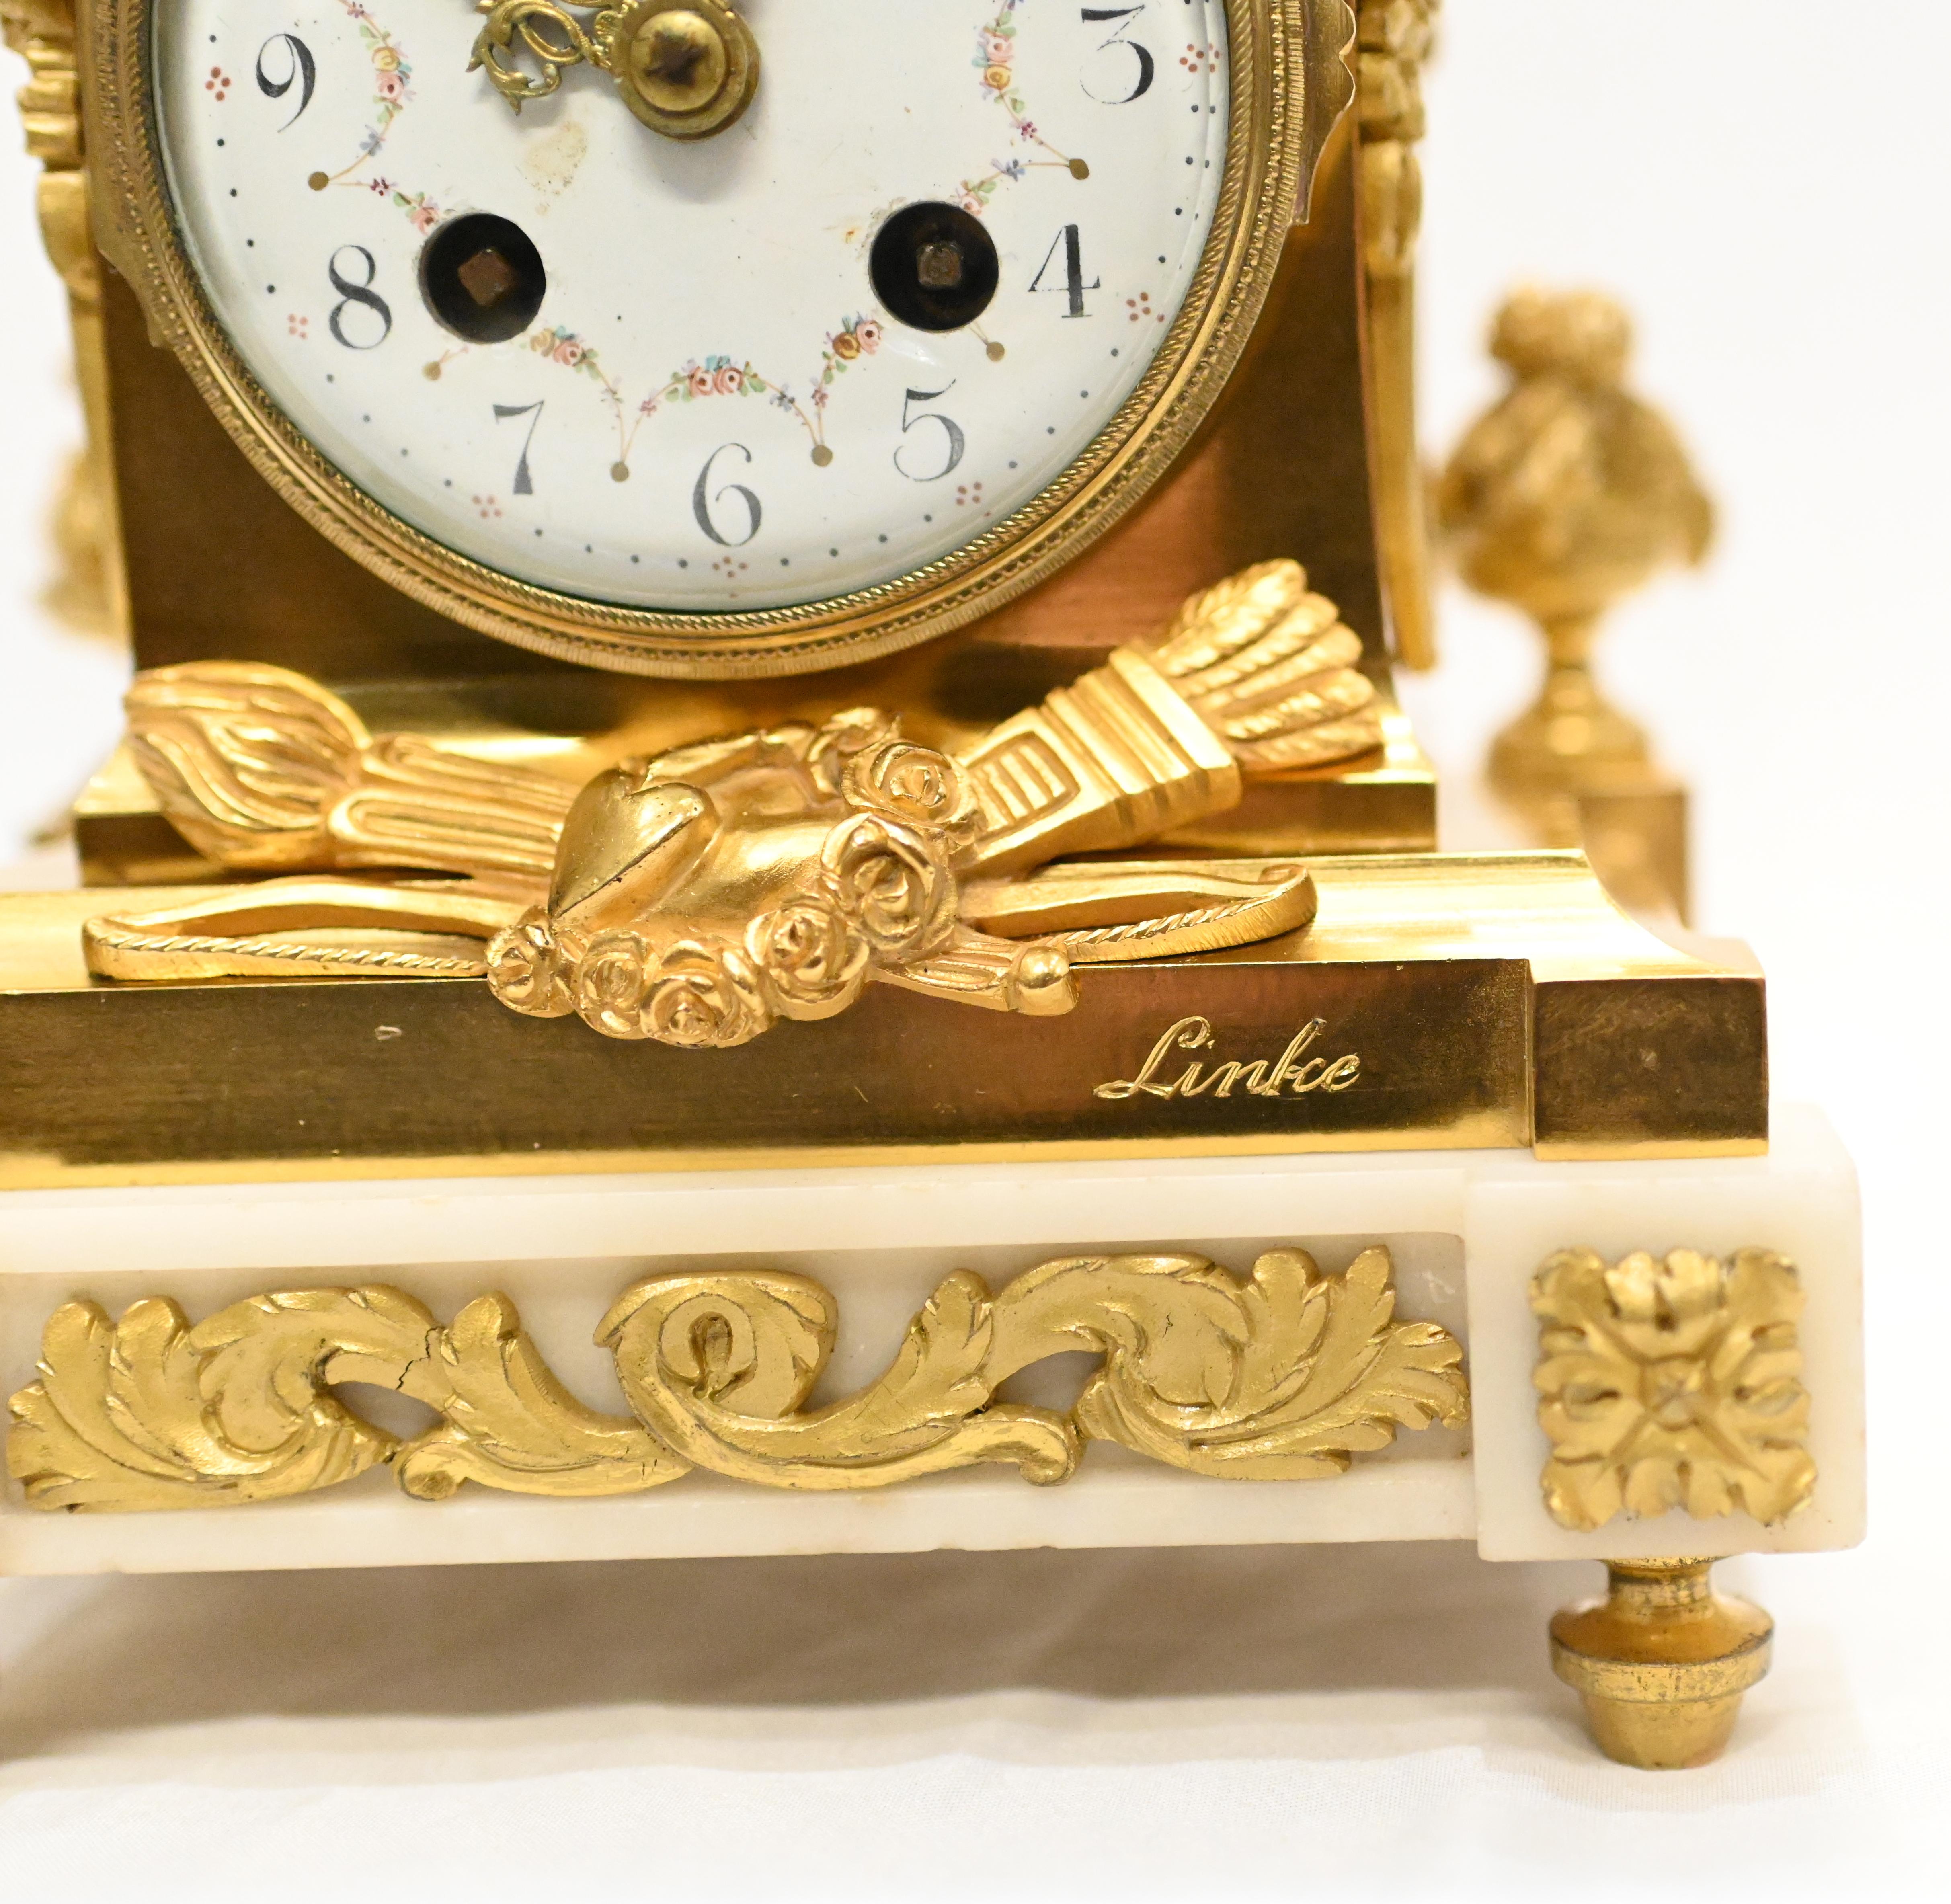 Französische vergoldete Manteluhr von Francois Linke mit hohem Sammlerwert
Das Stück ist auf dem Sockel signiert, bitte sehen Sie die Nahaufnahme
Der Guss und die Feinheiten der Vergoldung sind unglaublich detailliert
Klassische Motive,